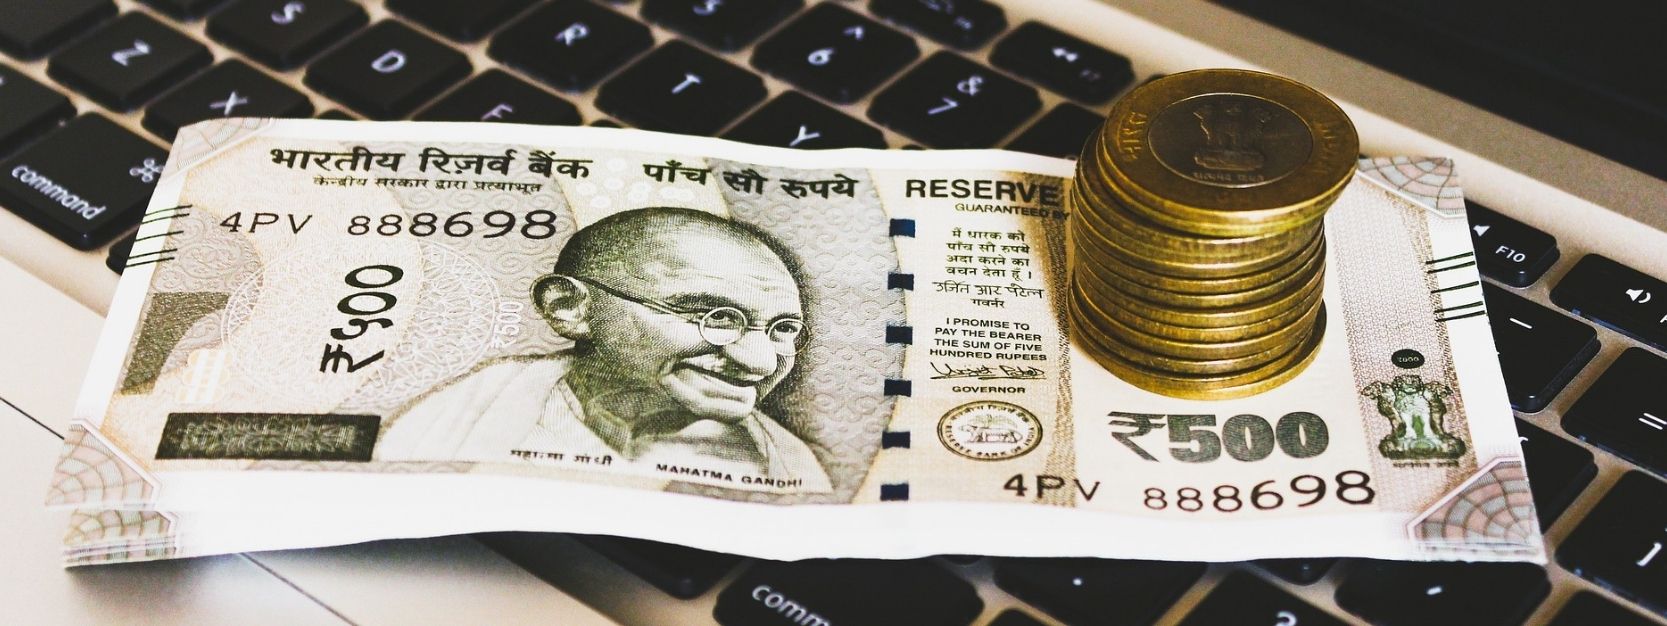 e-RUPI: pagamentos digitais evoluem com voucher pré-pago na Índia; confira mais detalhes